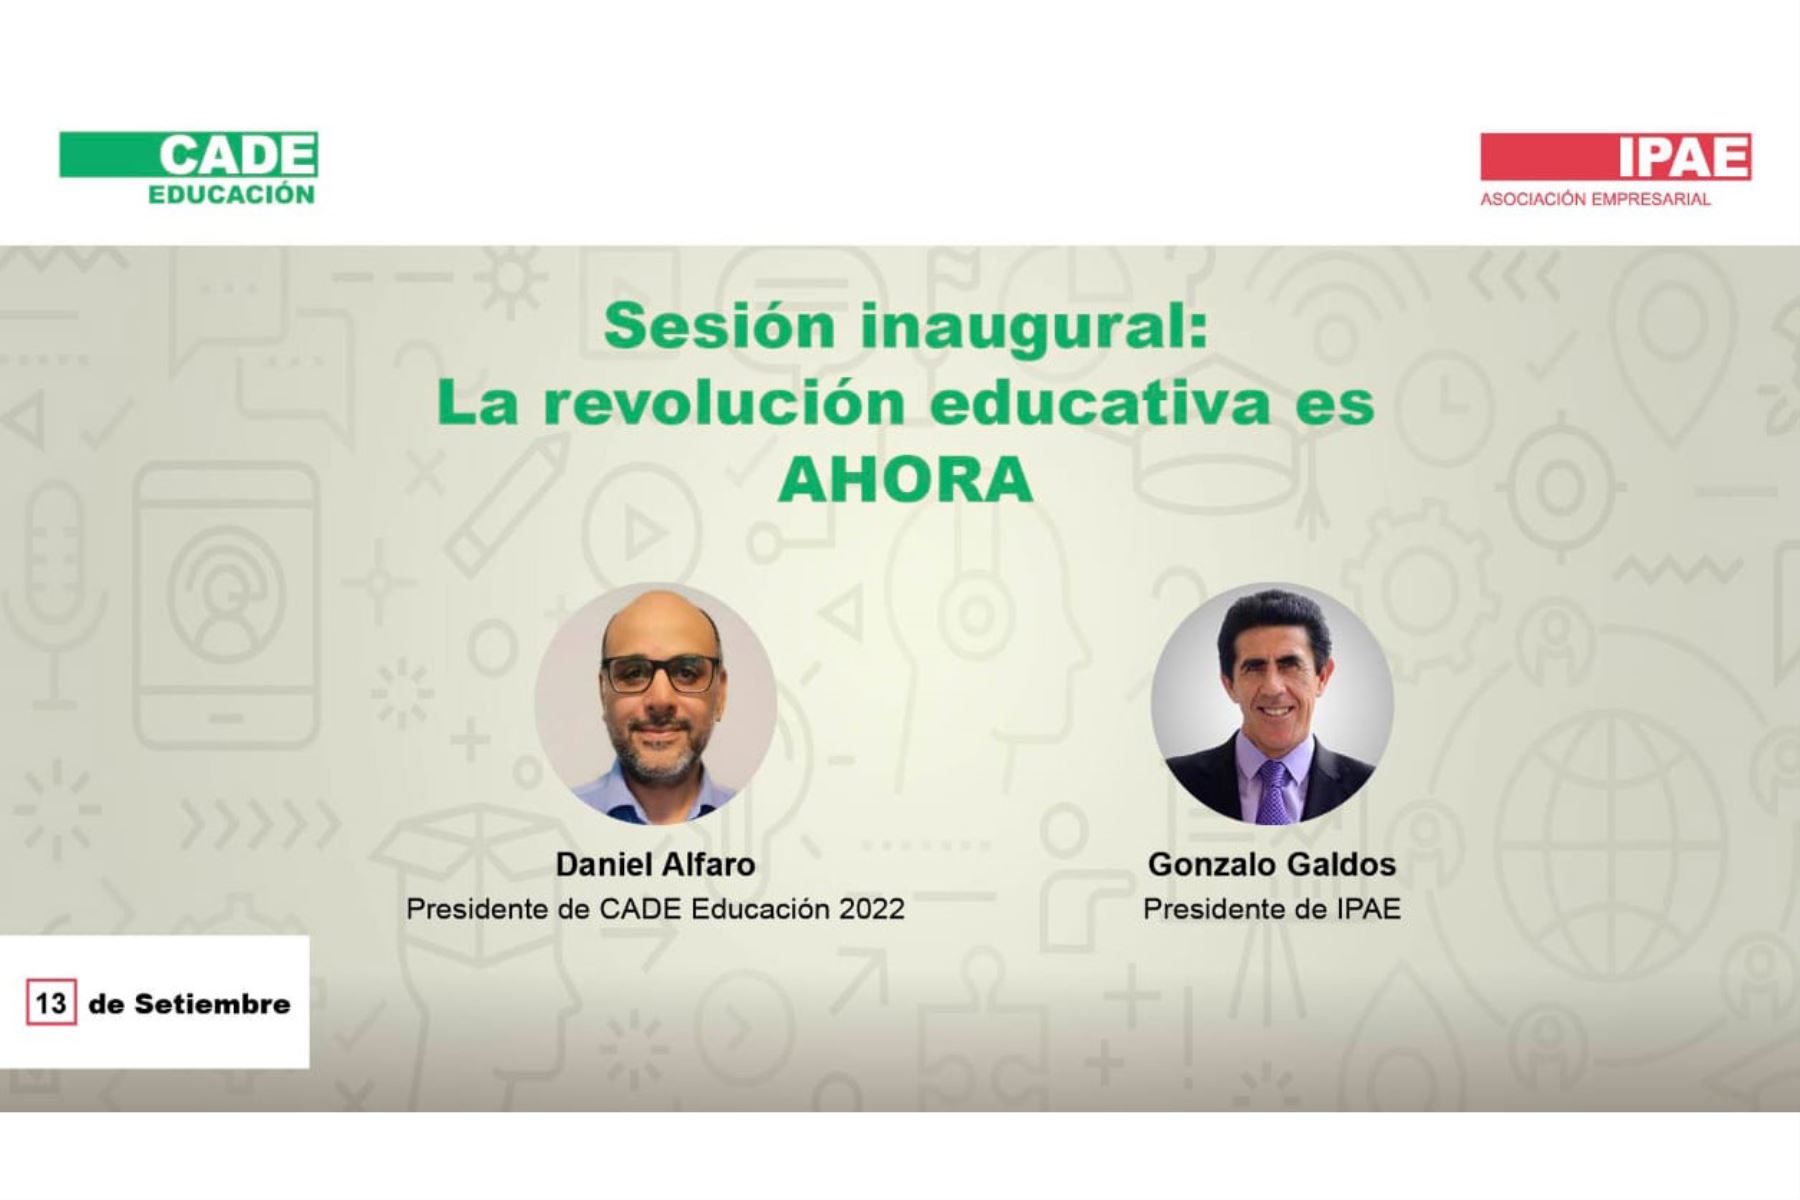 CADE Educación: hoy empezó la 14° edición con el lema “La revolución educativa es ahora”